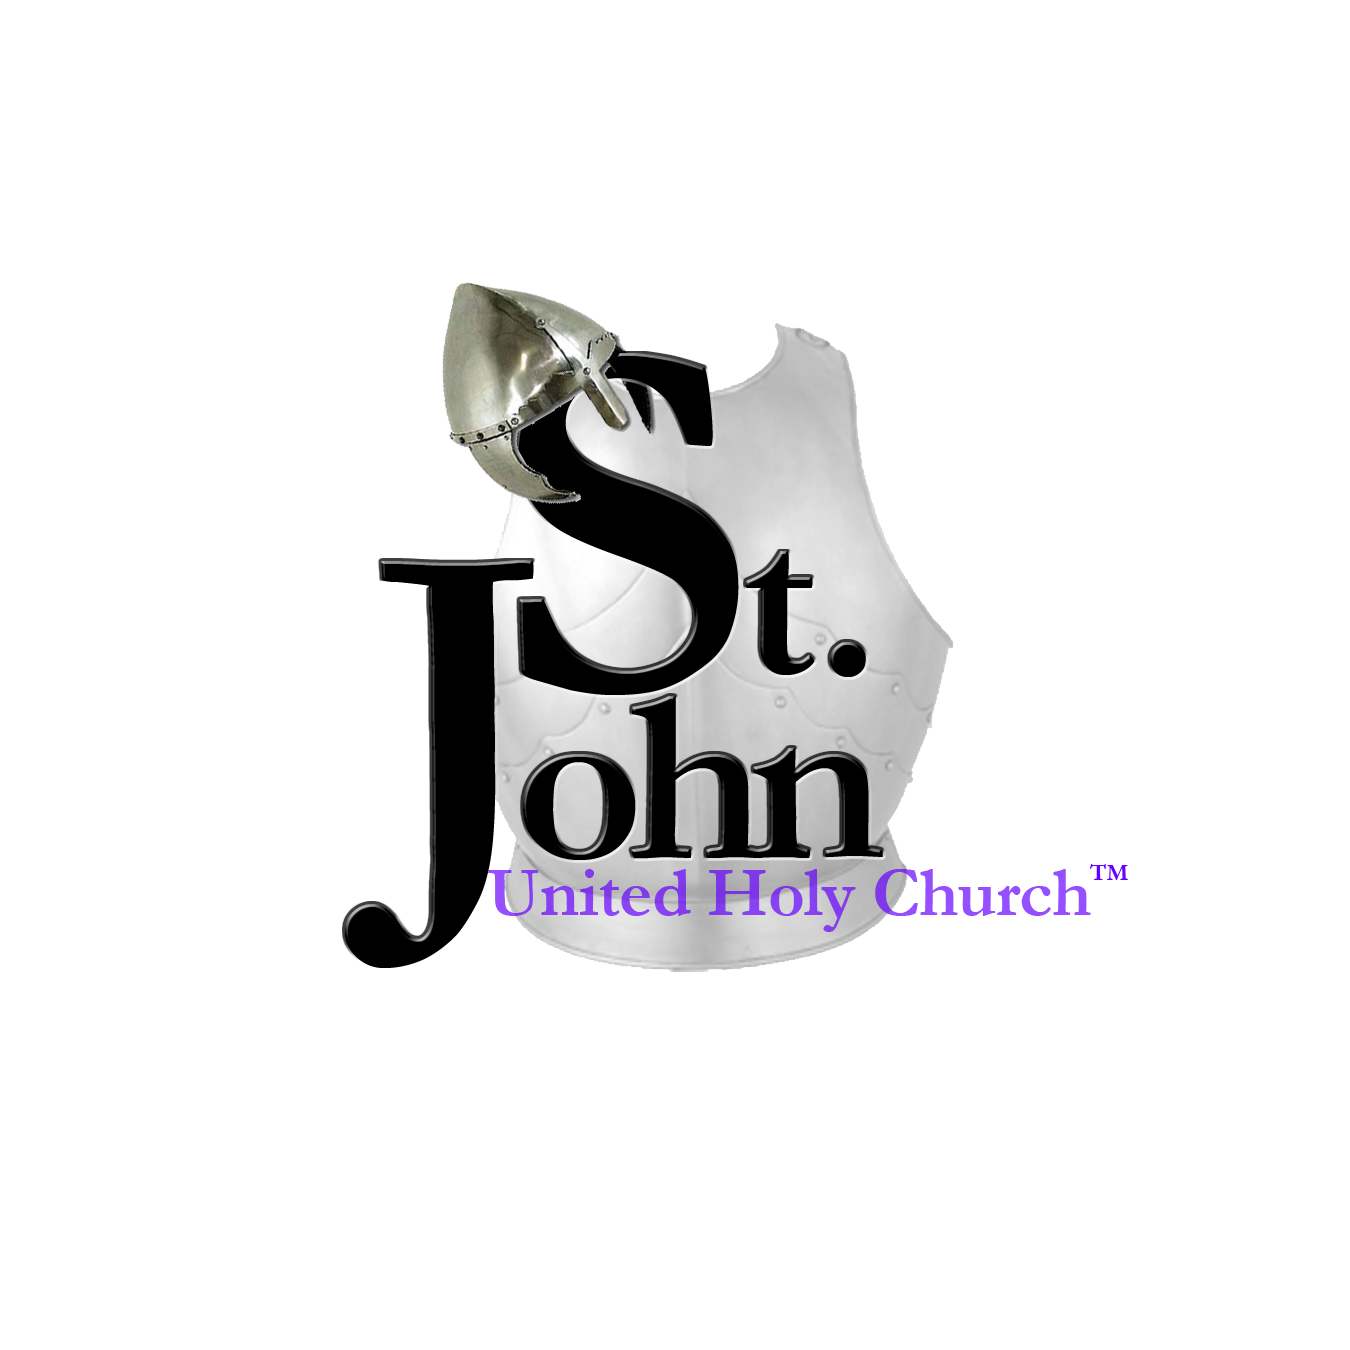 St. John United Holy Church